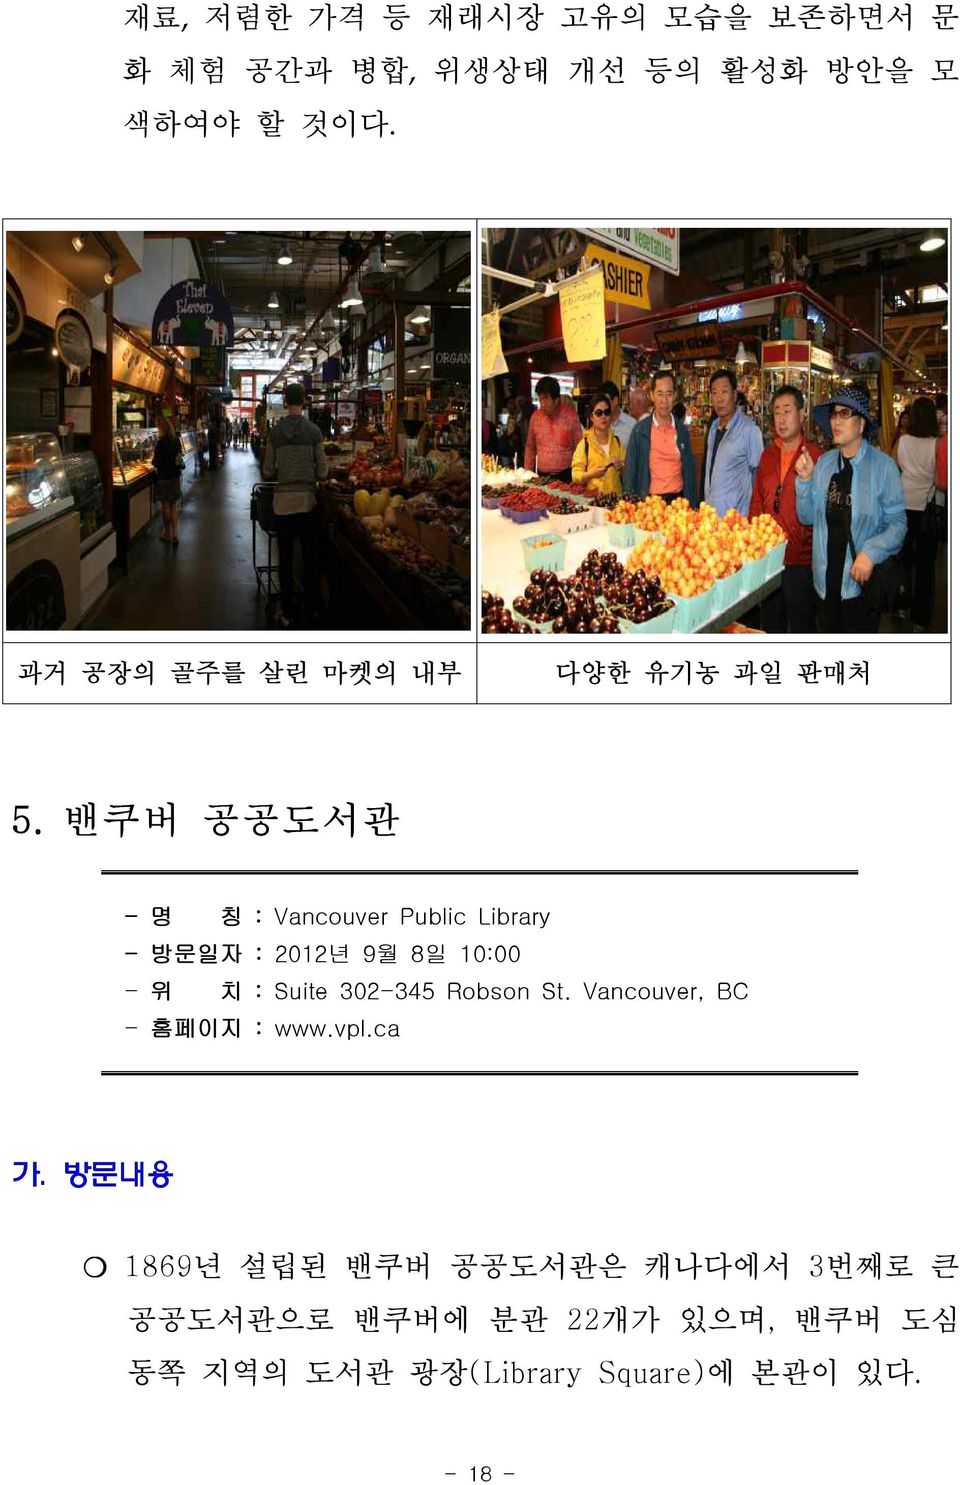 밴쿠버 공공도서관 - 명 칭 : Vancouver Public Library - 방문일자 : 2012년 9월 8일 10:00 - 위 치 : Suite 302-345